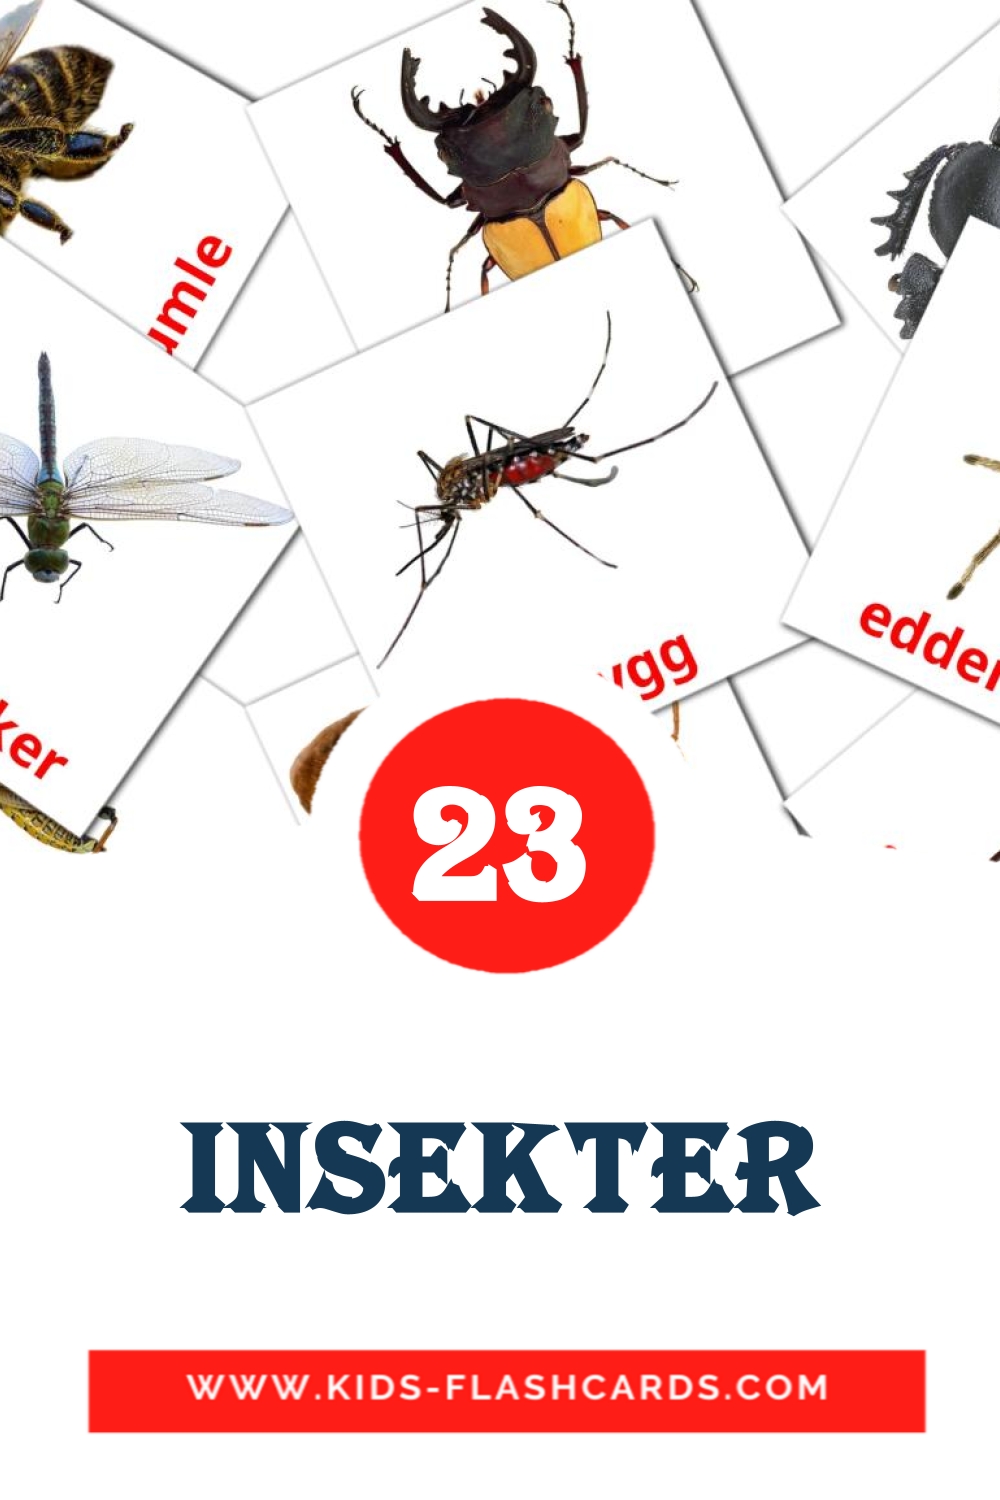 23 tarjetas didacticas de insekter para el jardín de infancia en noruego